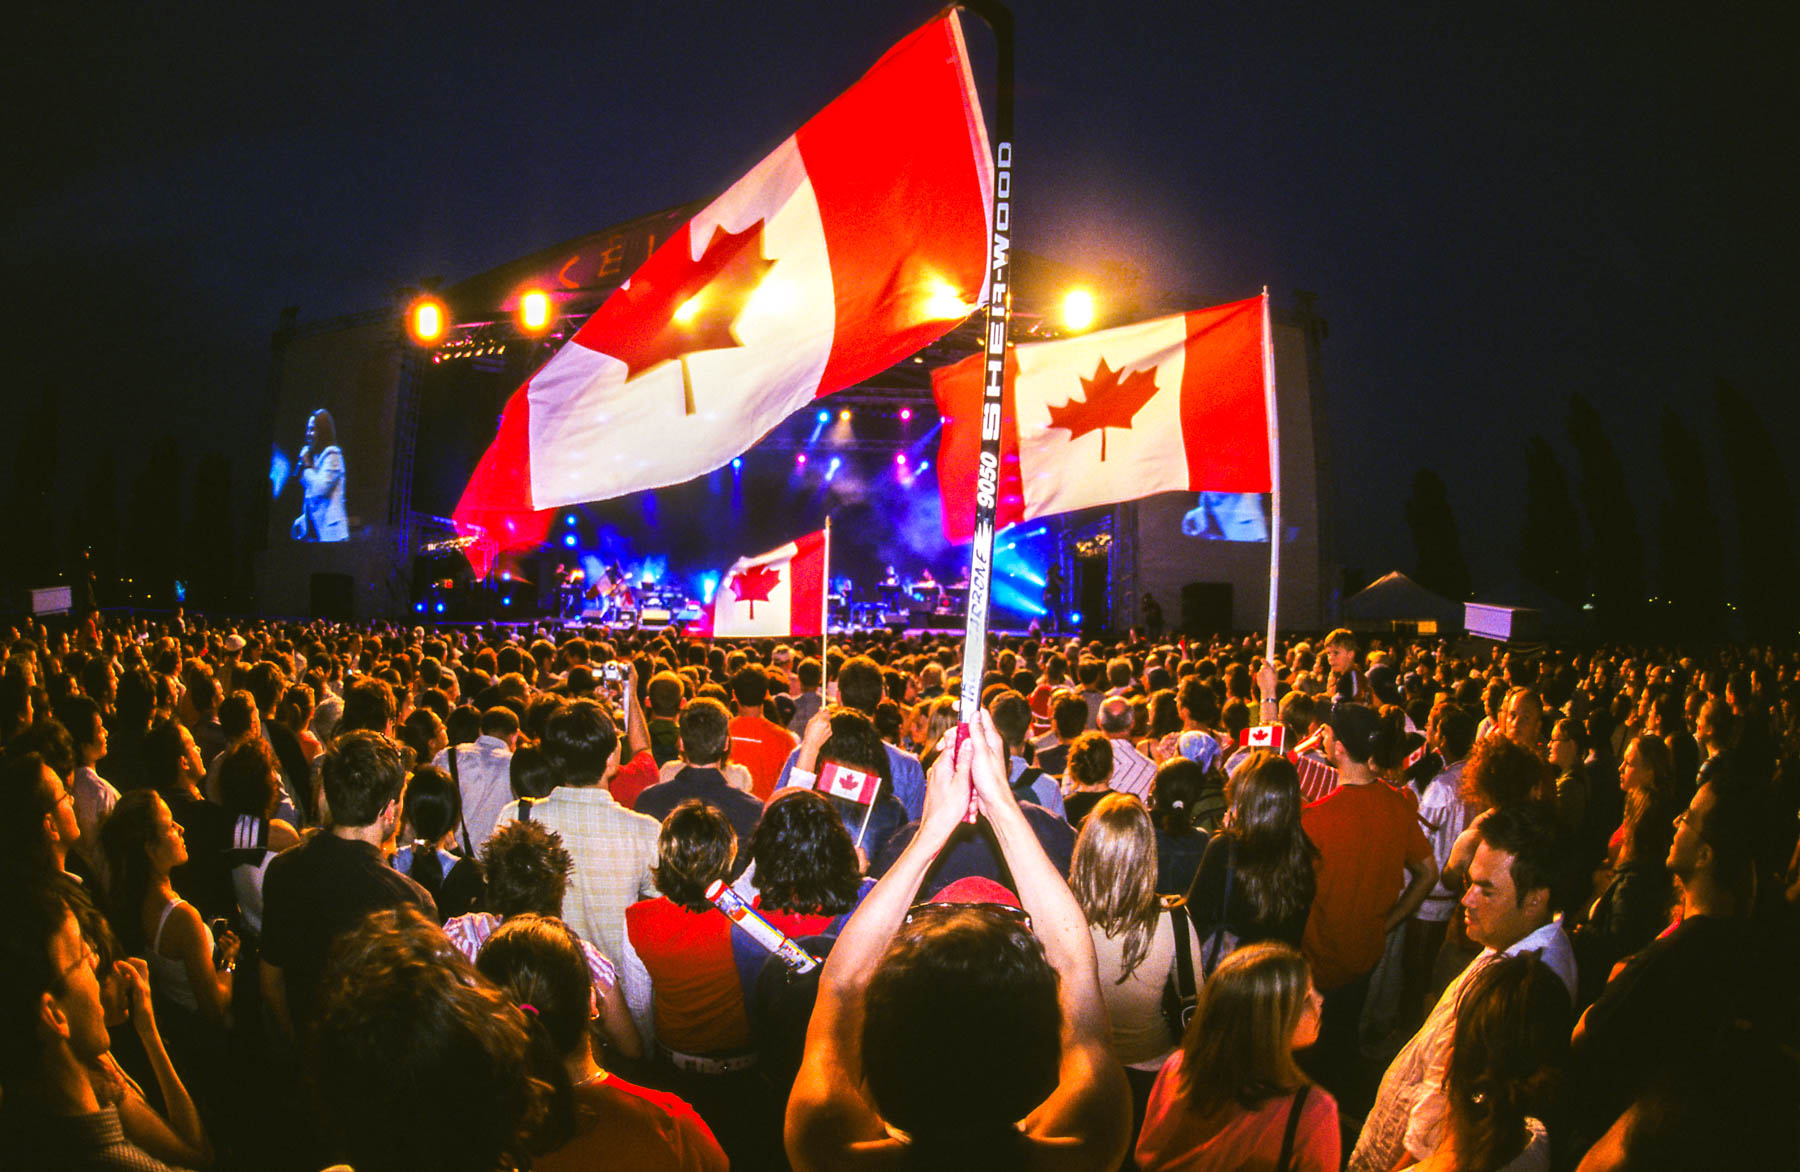 Trois grands drapeaux blanc et rouge se dressent au-dessus d’une foule amassée près d’une scène de spectacle éclairée la nuit.